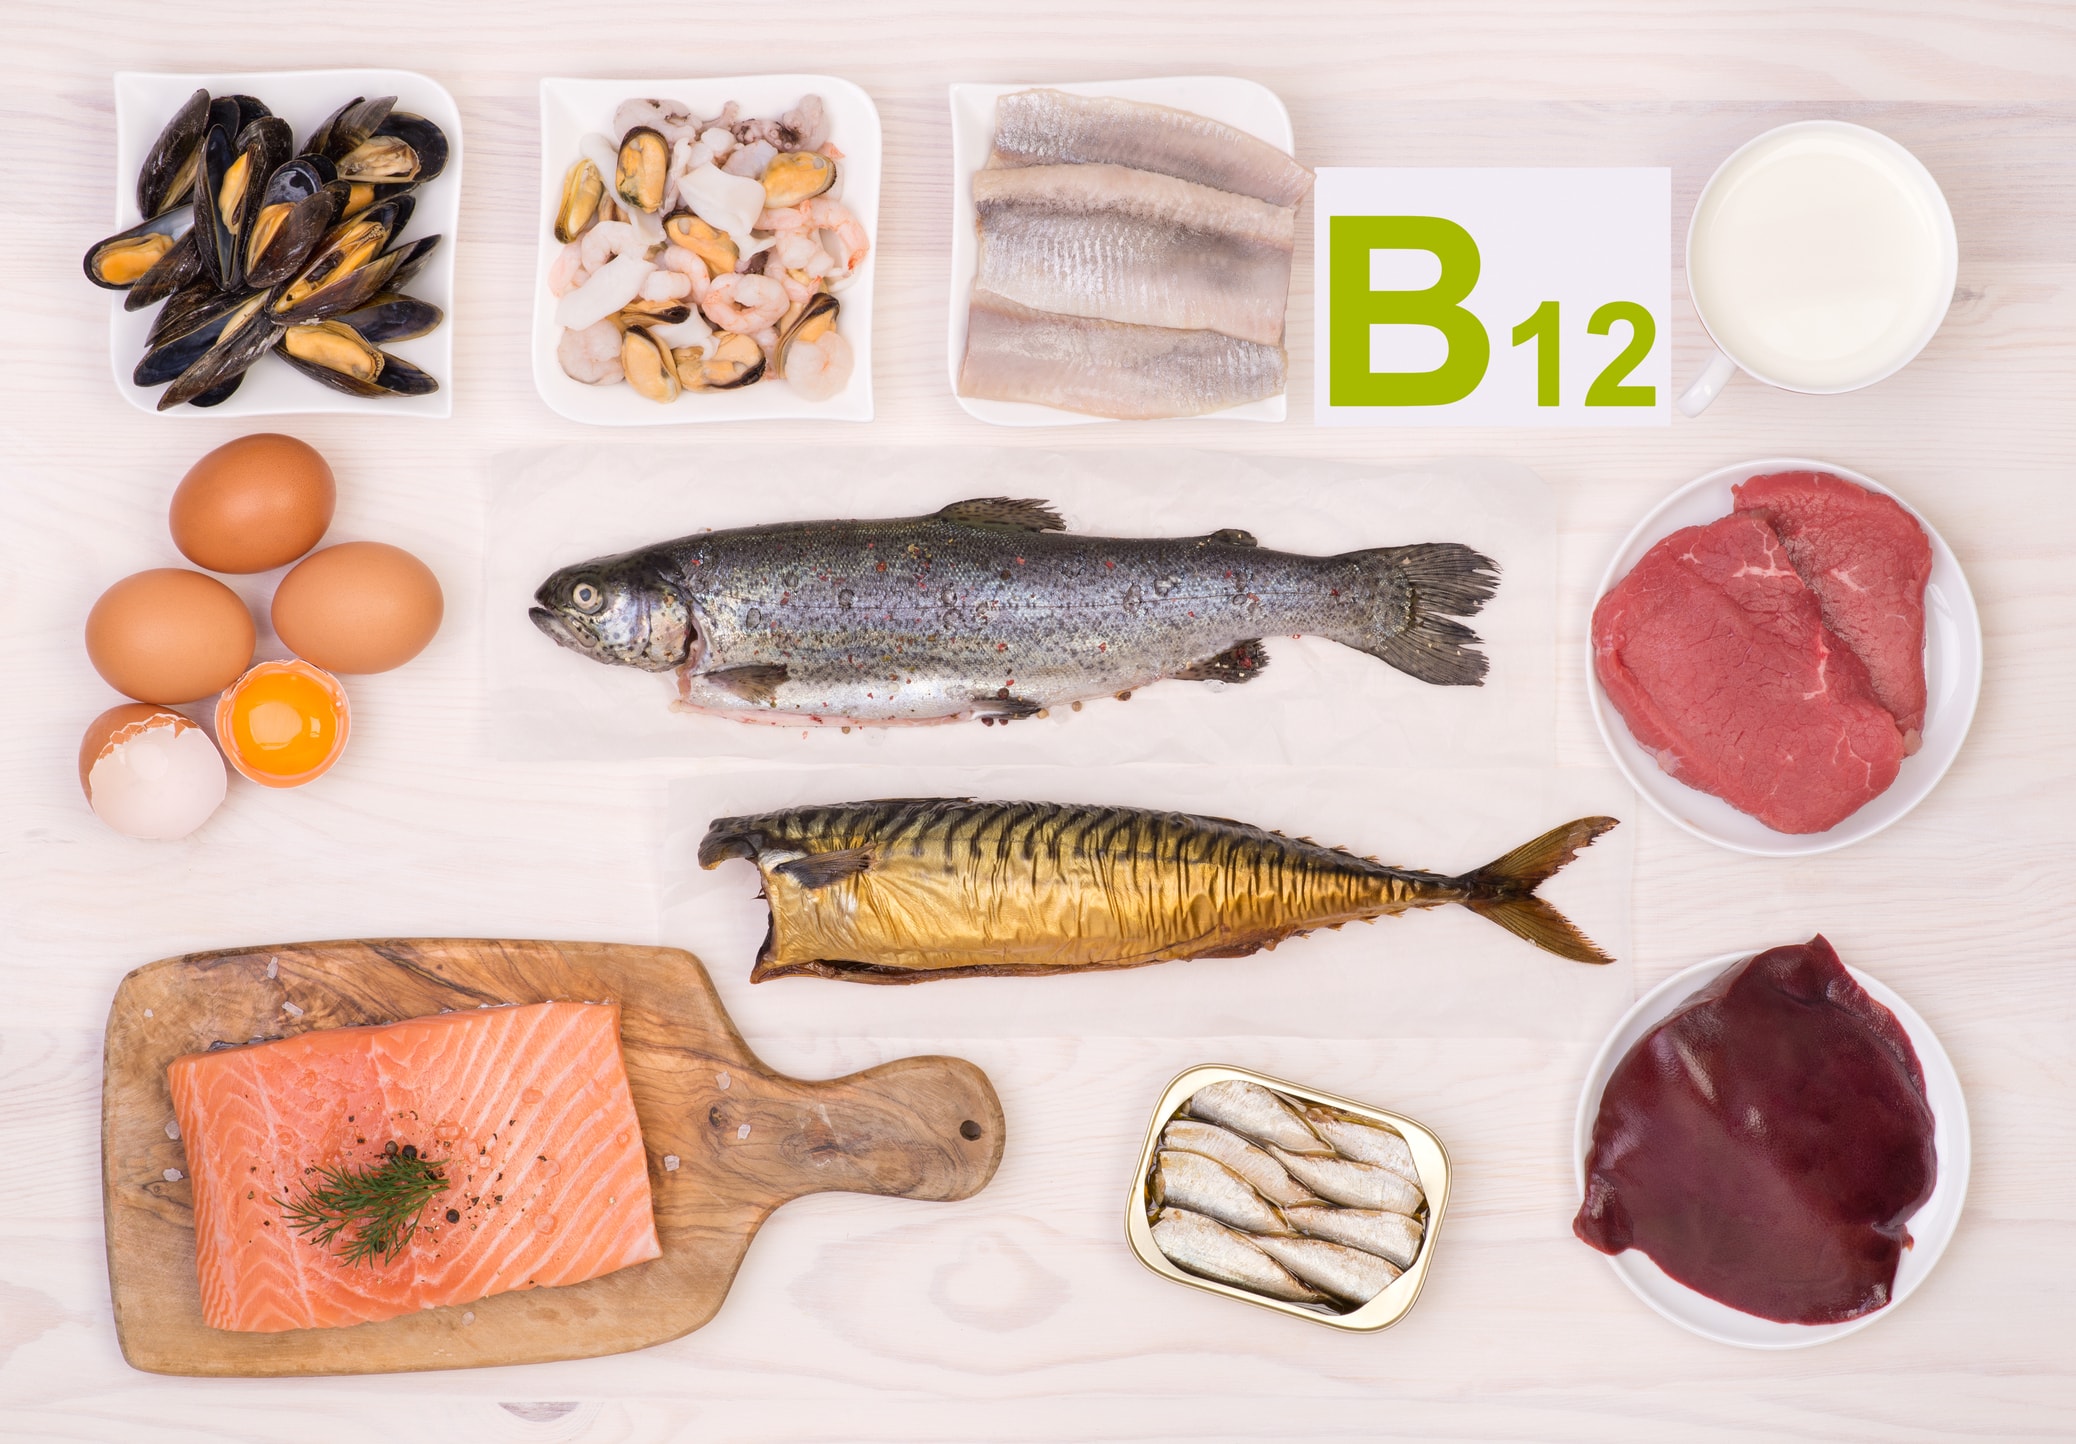 Б 12 от чего помогает. Витамин b12 источники витамина. Источник цианокобаламин витамин в12. Витамин б12 источники витамина. Витамин д и витамин б12.